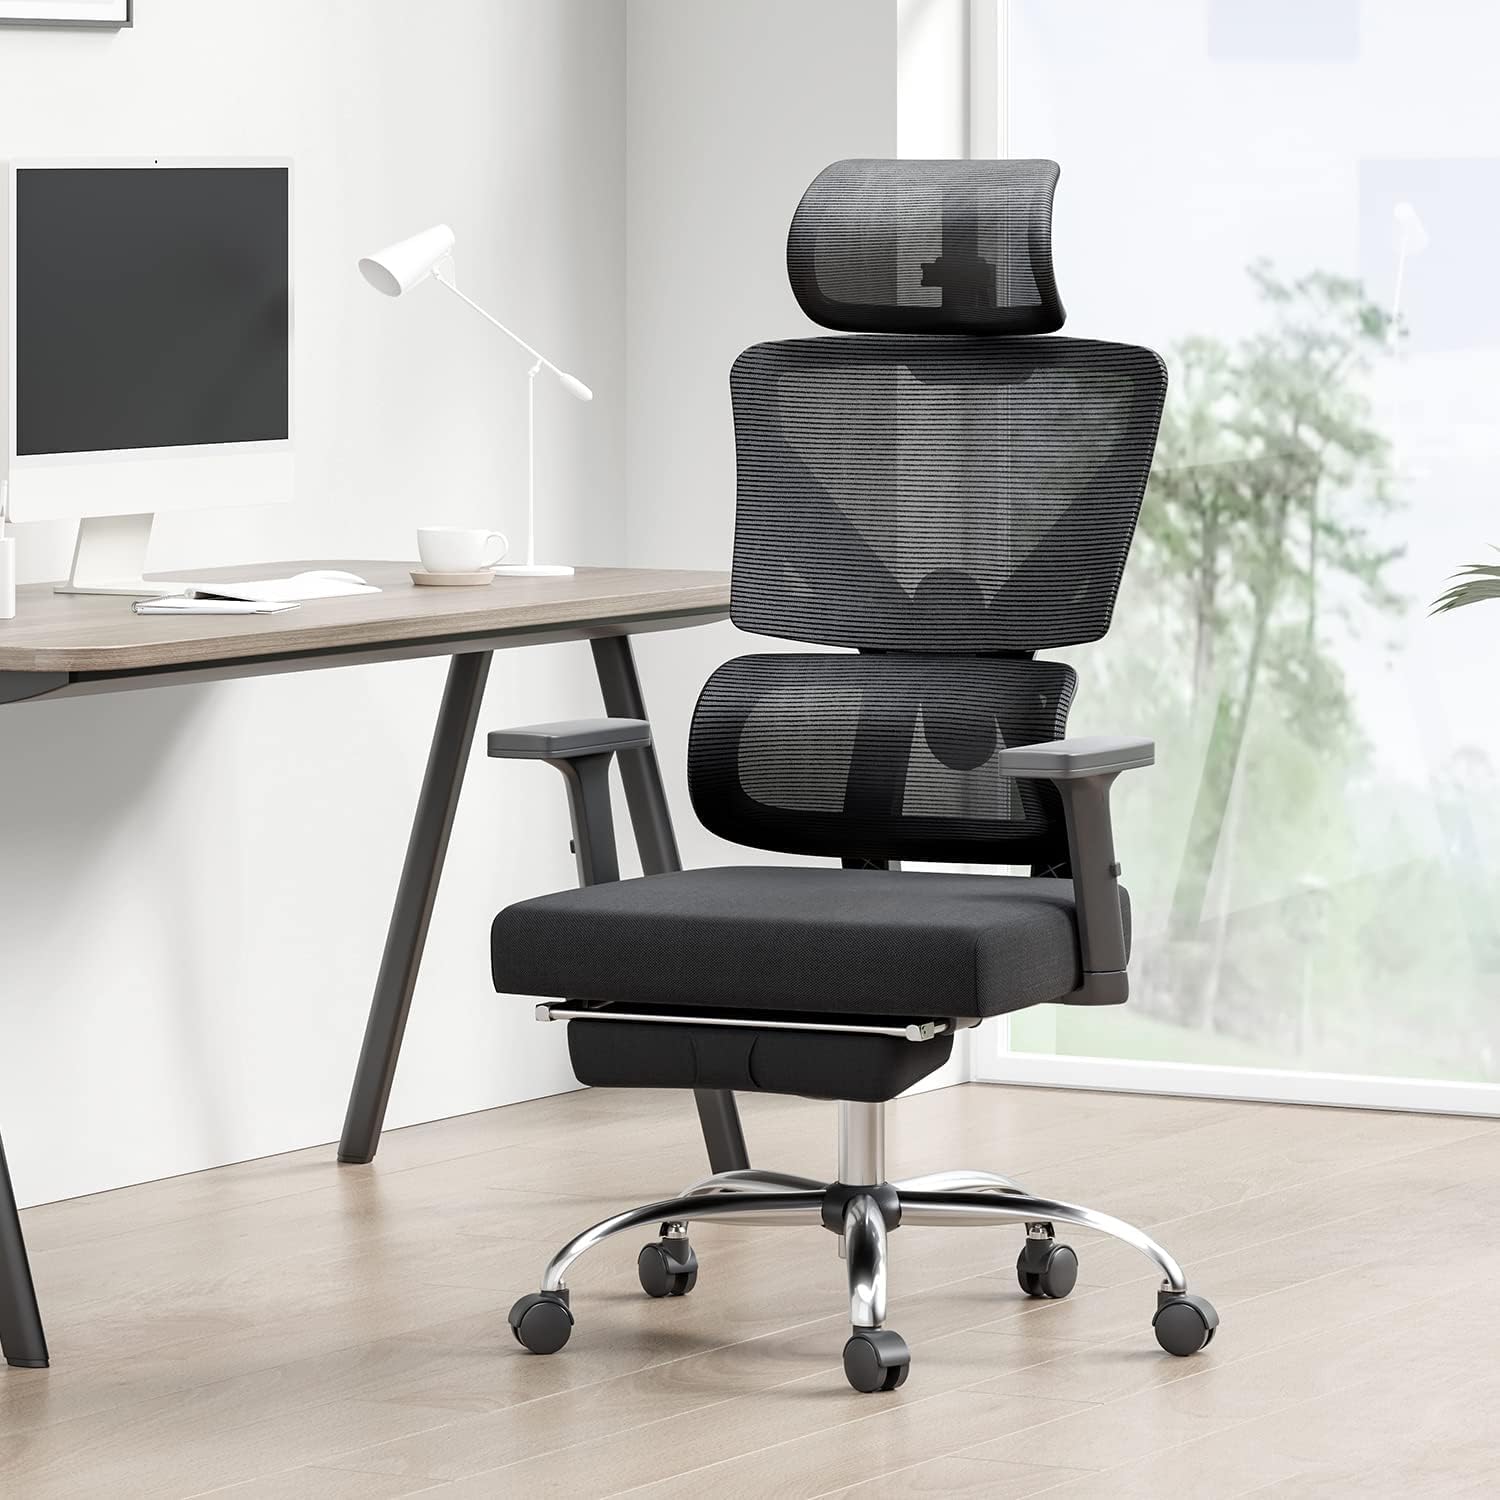 Hbada E2 Desk Chair Ergonomic Office Chair Mesh Desk Chair with Lumbar Support, Recliner Computer Chair,Black